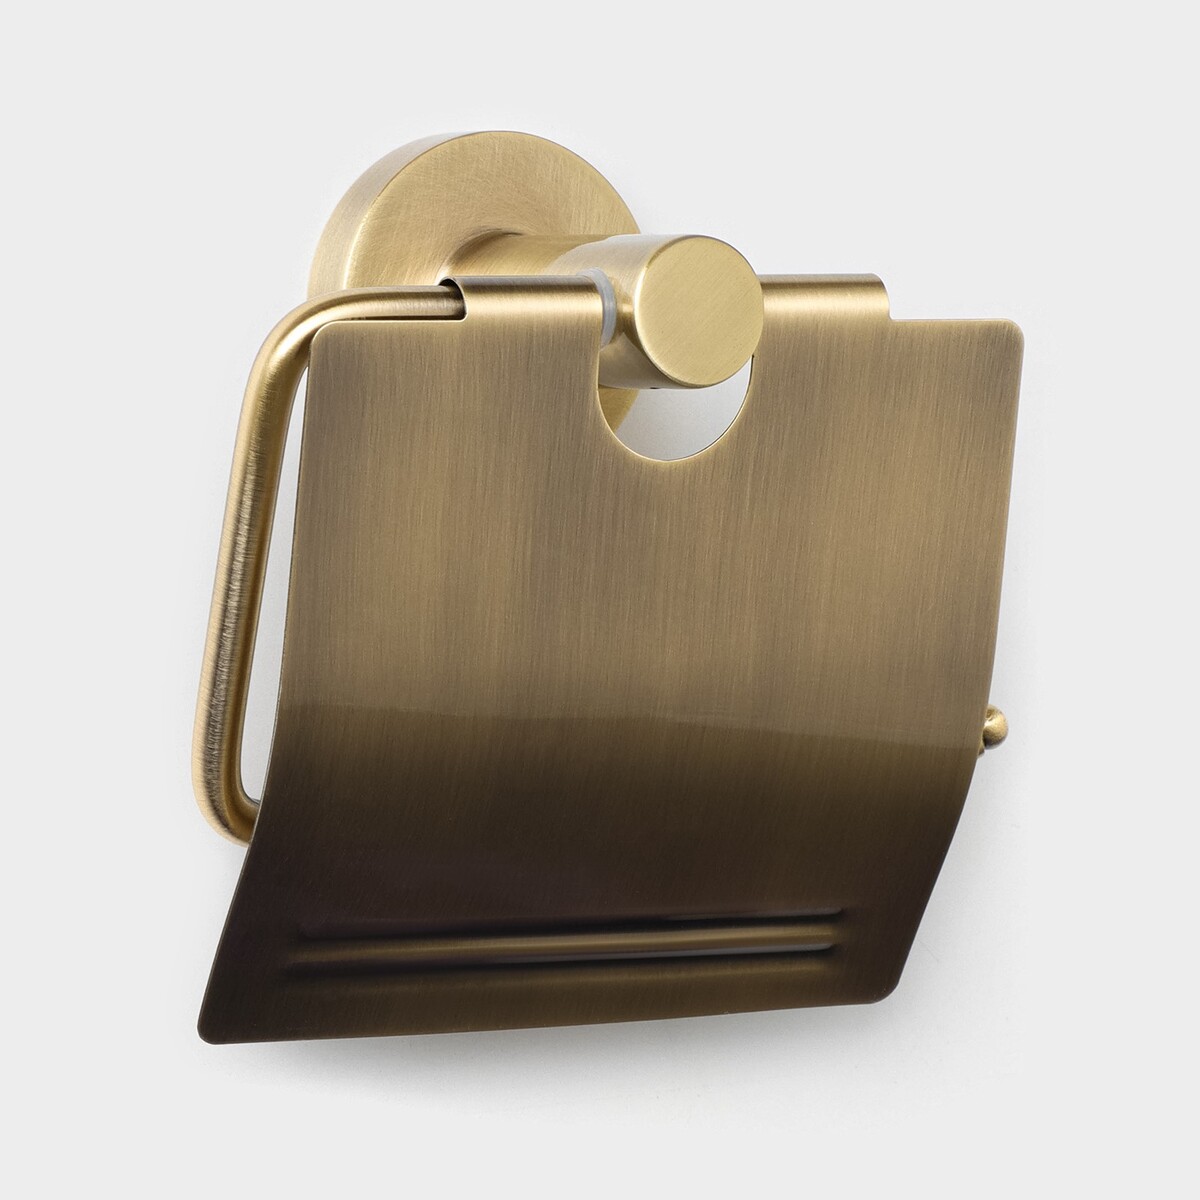 Держатель для туалетной бумаги с крышкой штольц stölz bacic, серия bronze держатель для туалетной бумаги штольц stölz 16 2×2 5×9 5 см нержавеющая сталь